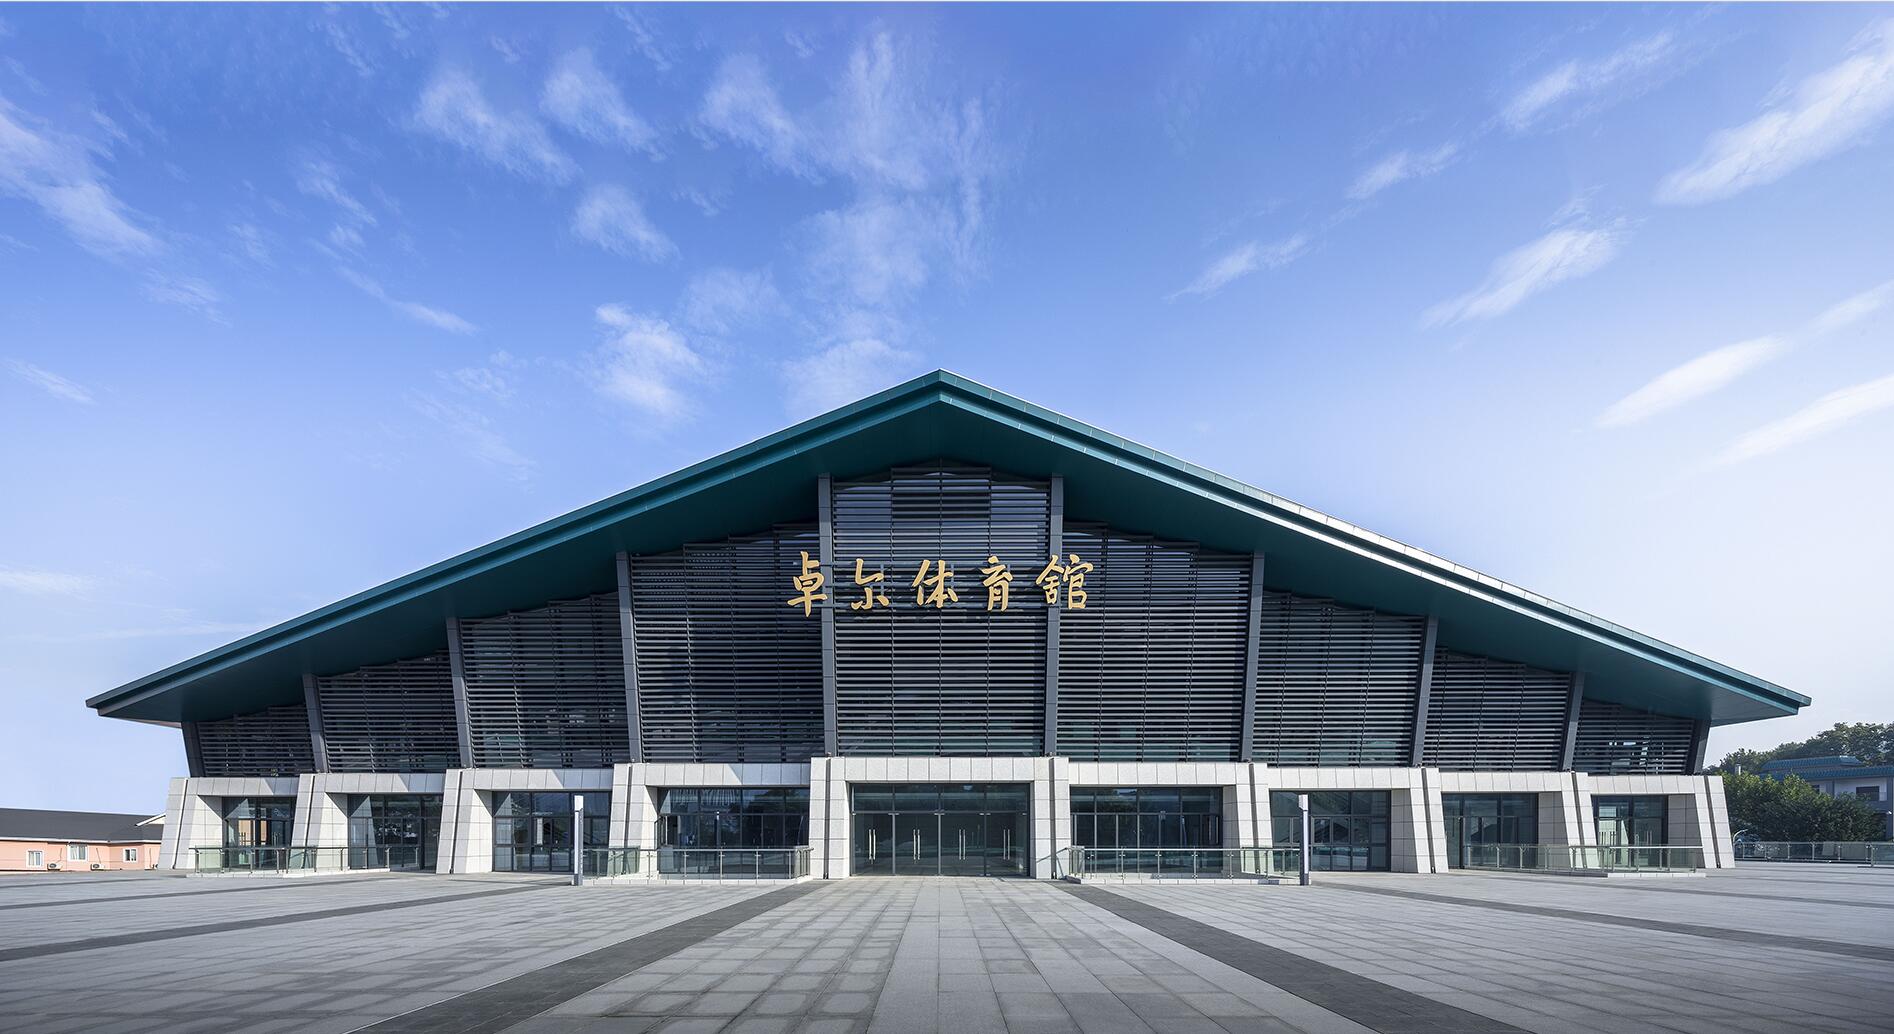 中建三局总承包公司承建的武汉大学大学生体育活动中心